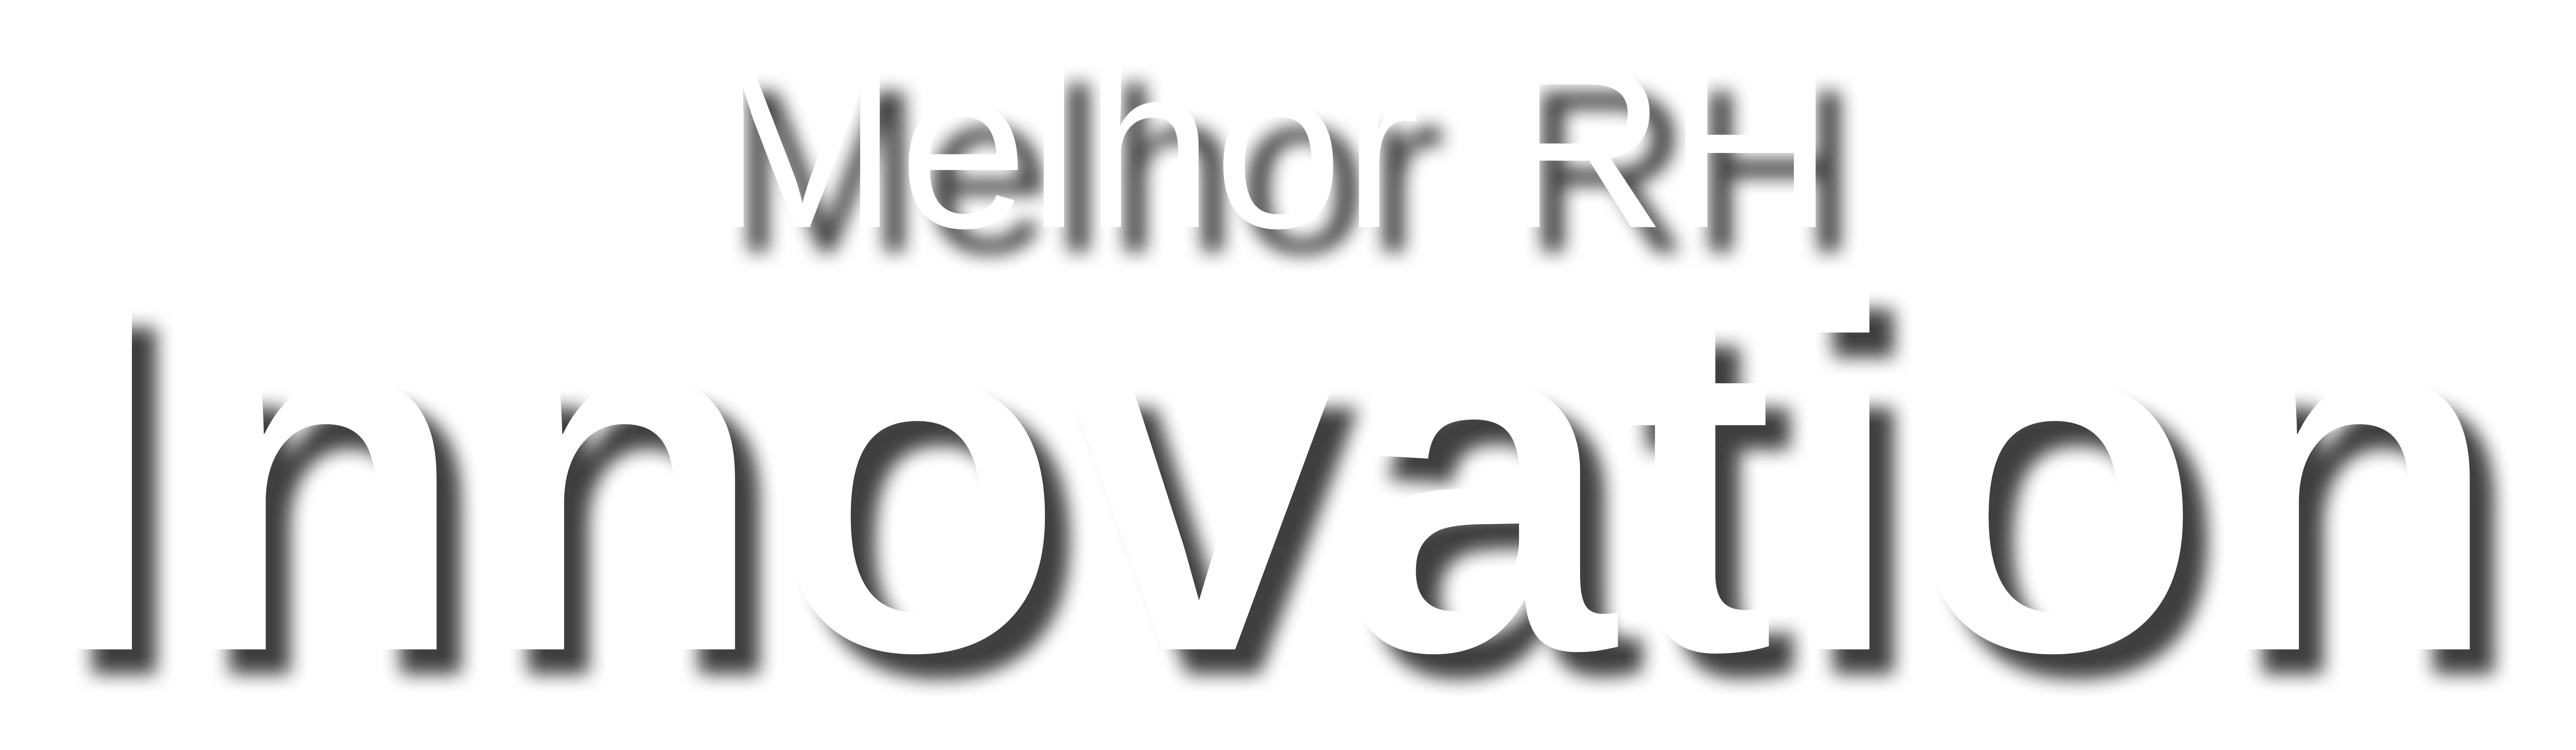 Melhor RH Innovation